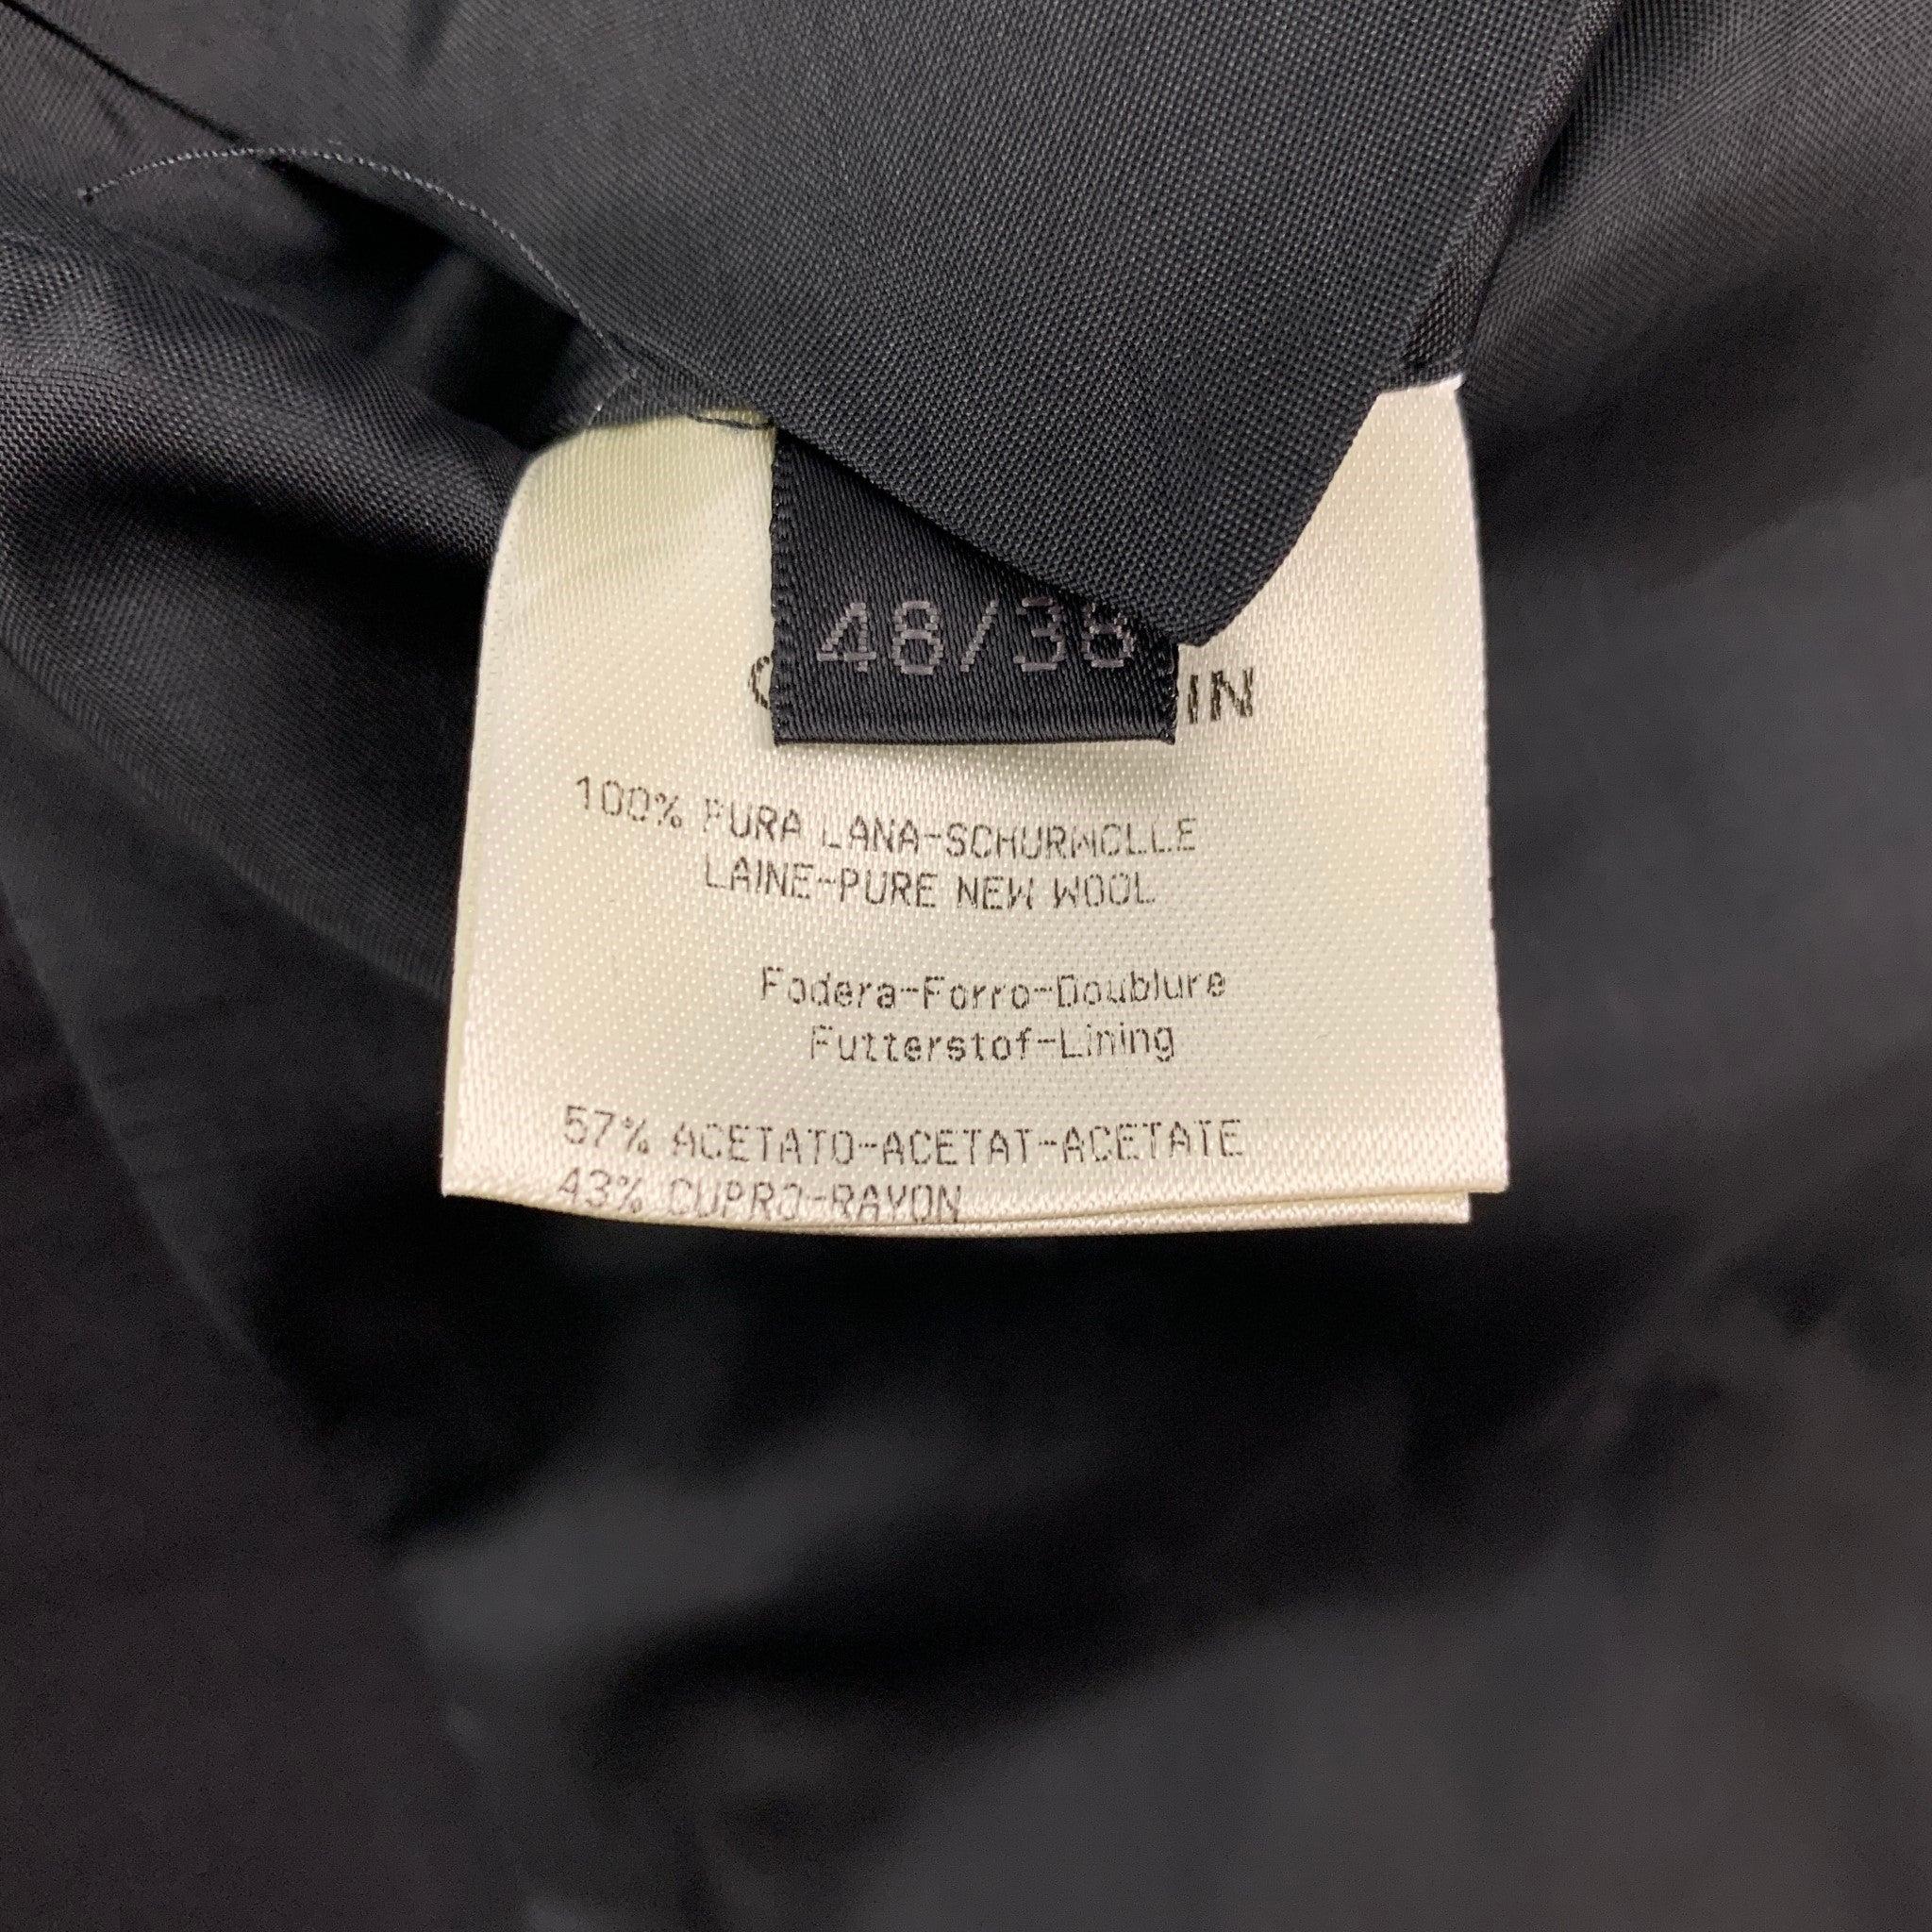 CALVIN KLEIN COLLECTION Size 38 Black Wool Notch Lapel Suit 4